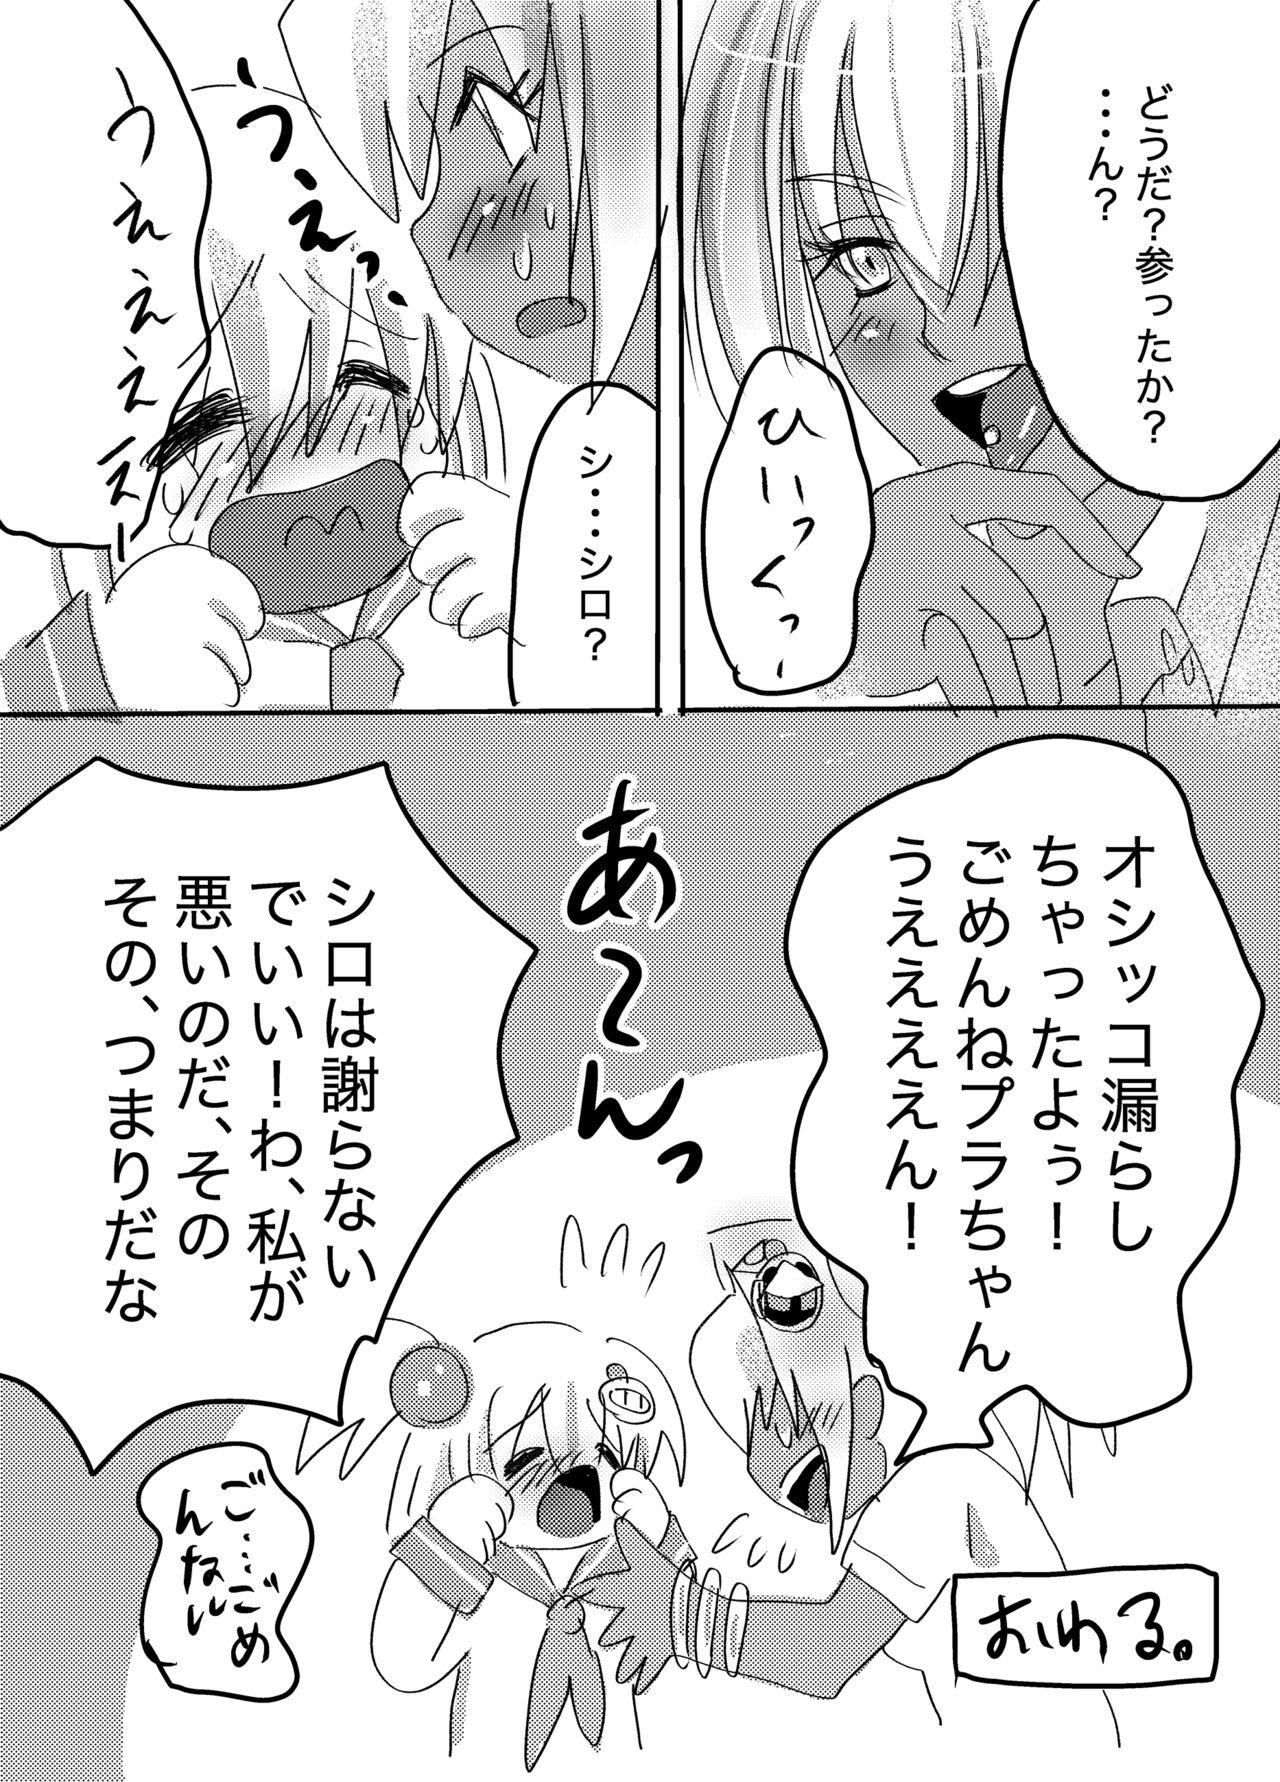 Hole Galtinum ni Omanko Peropero Sarechau Shiro-chan no Manga - Bomber girl Putita - Page 8